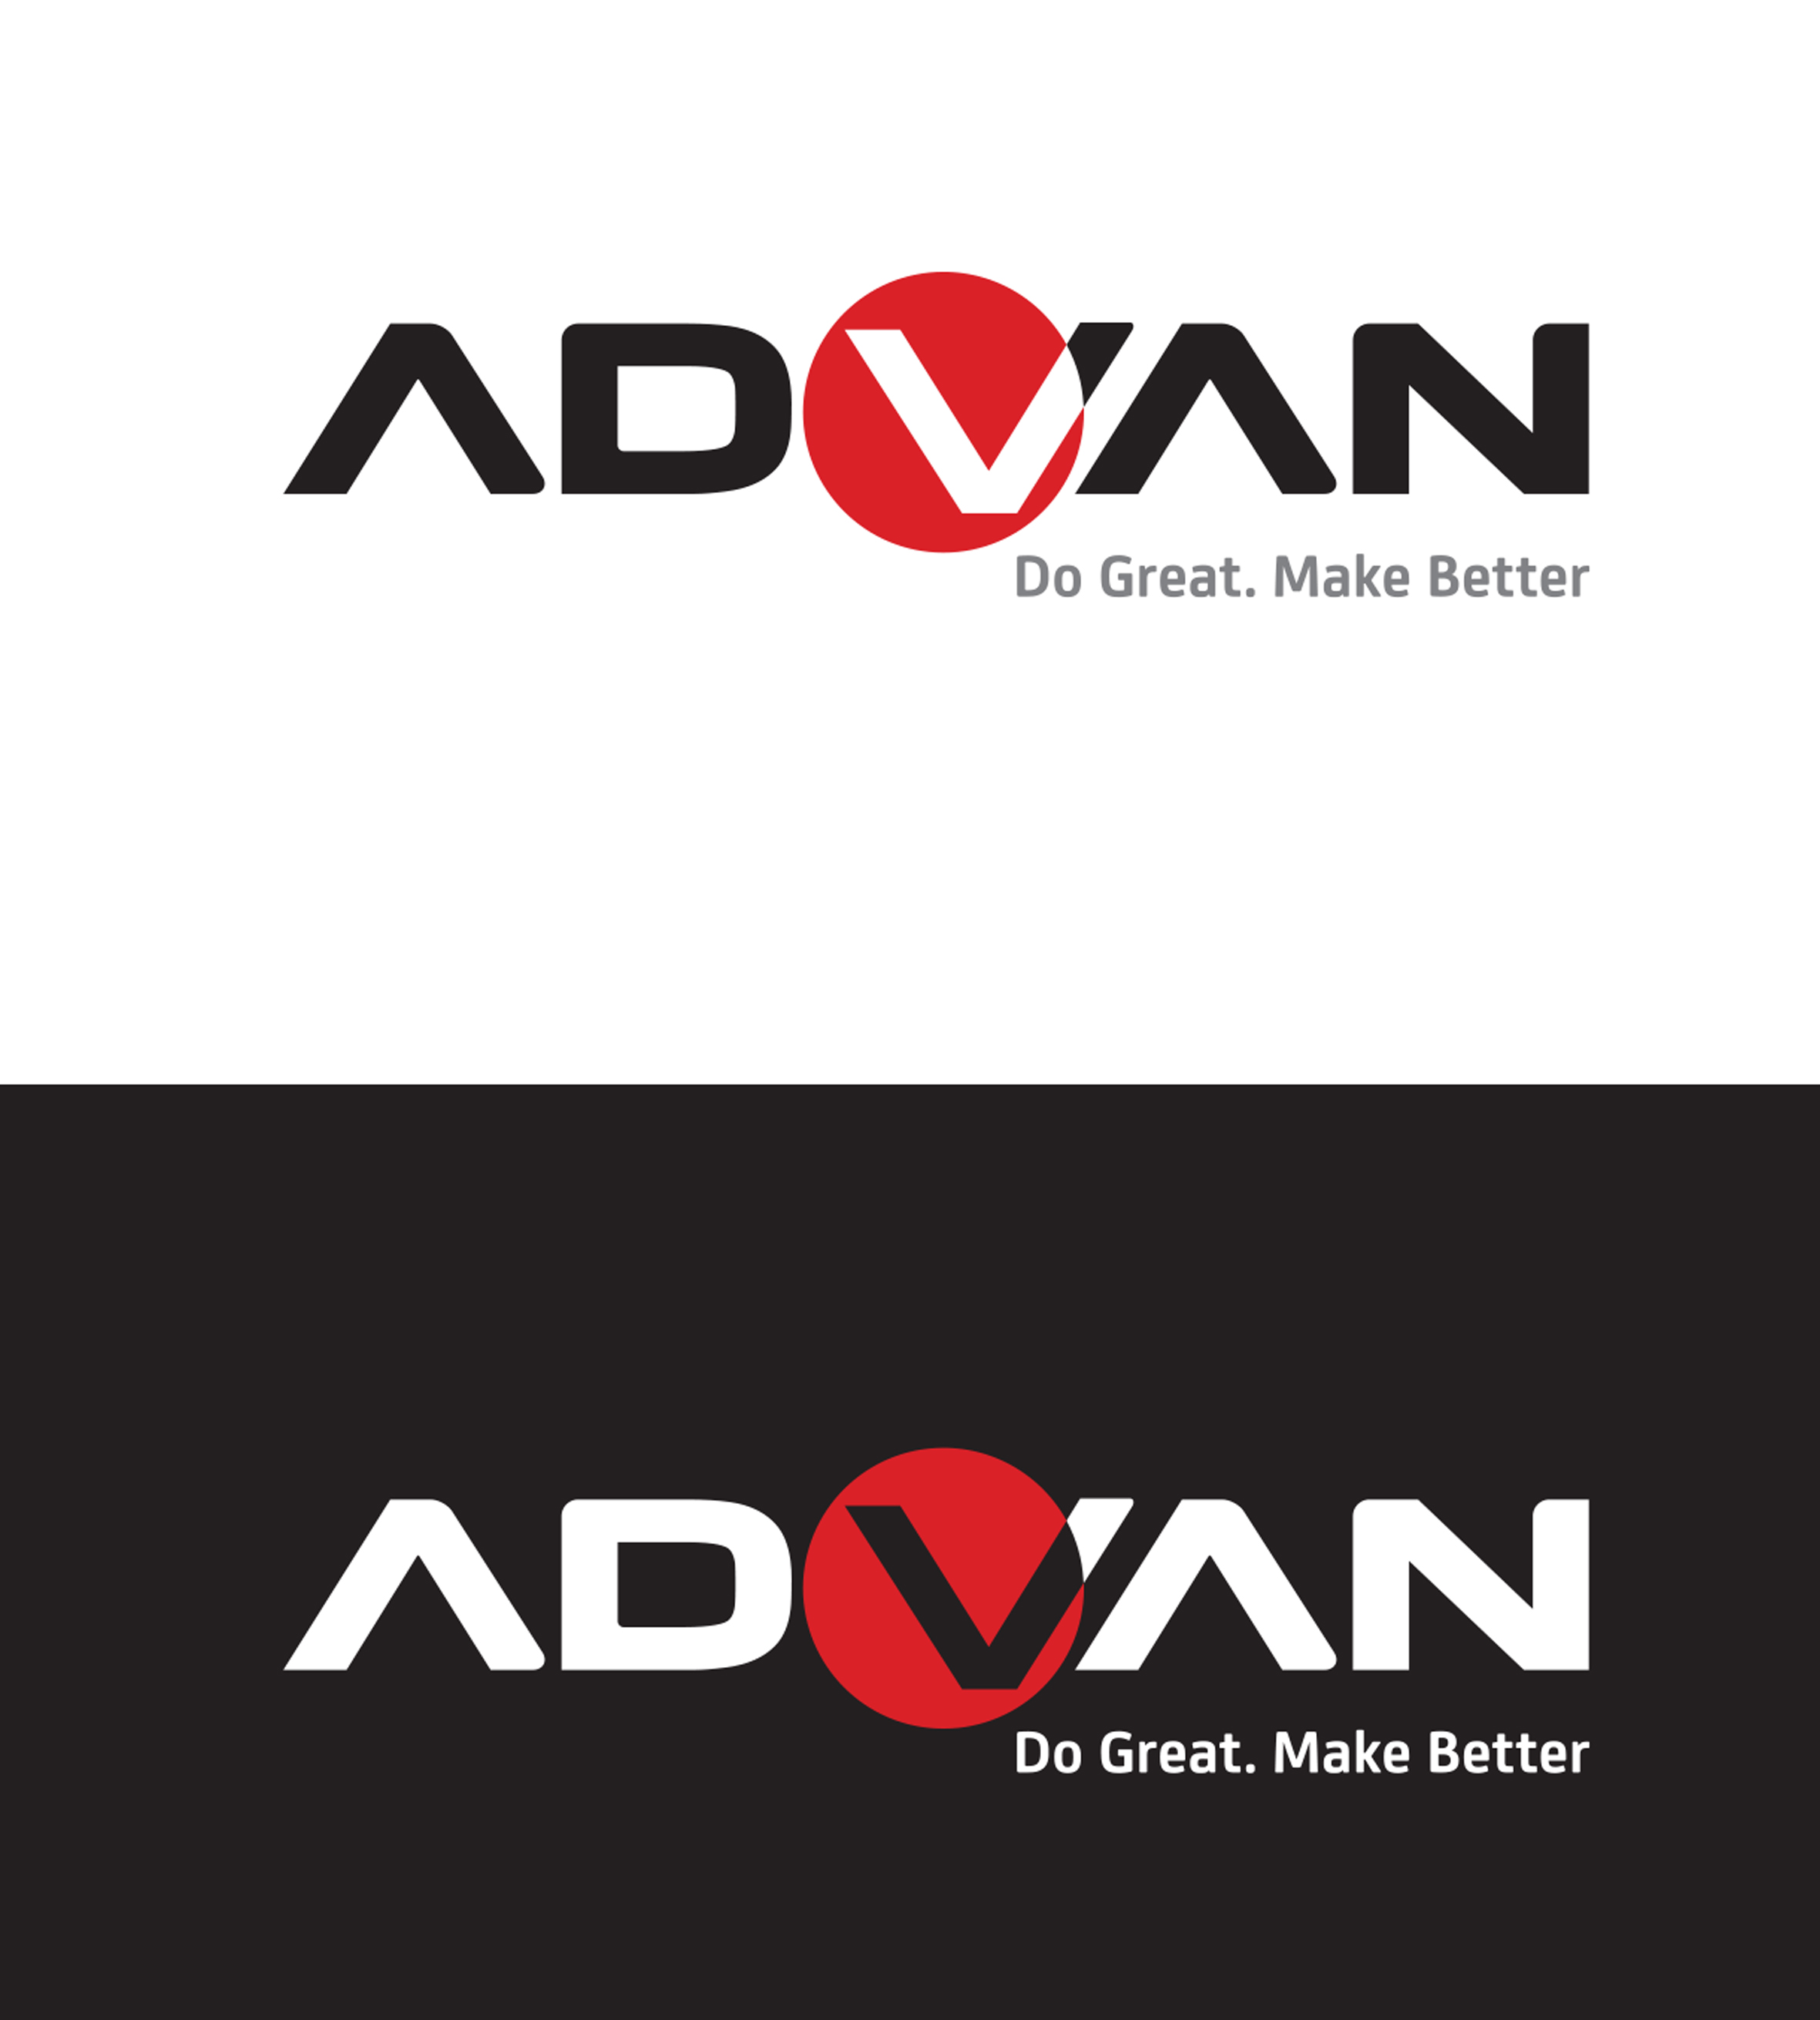 Logo Advan_Do Great Oke .jpg - Advan, Transparent background PNG HD thumbnail